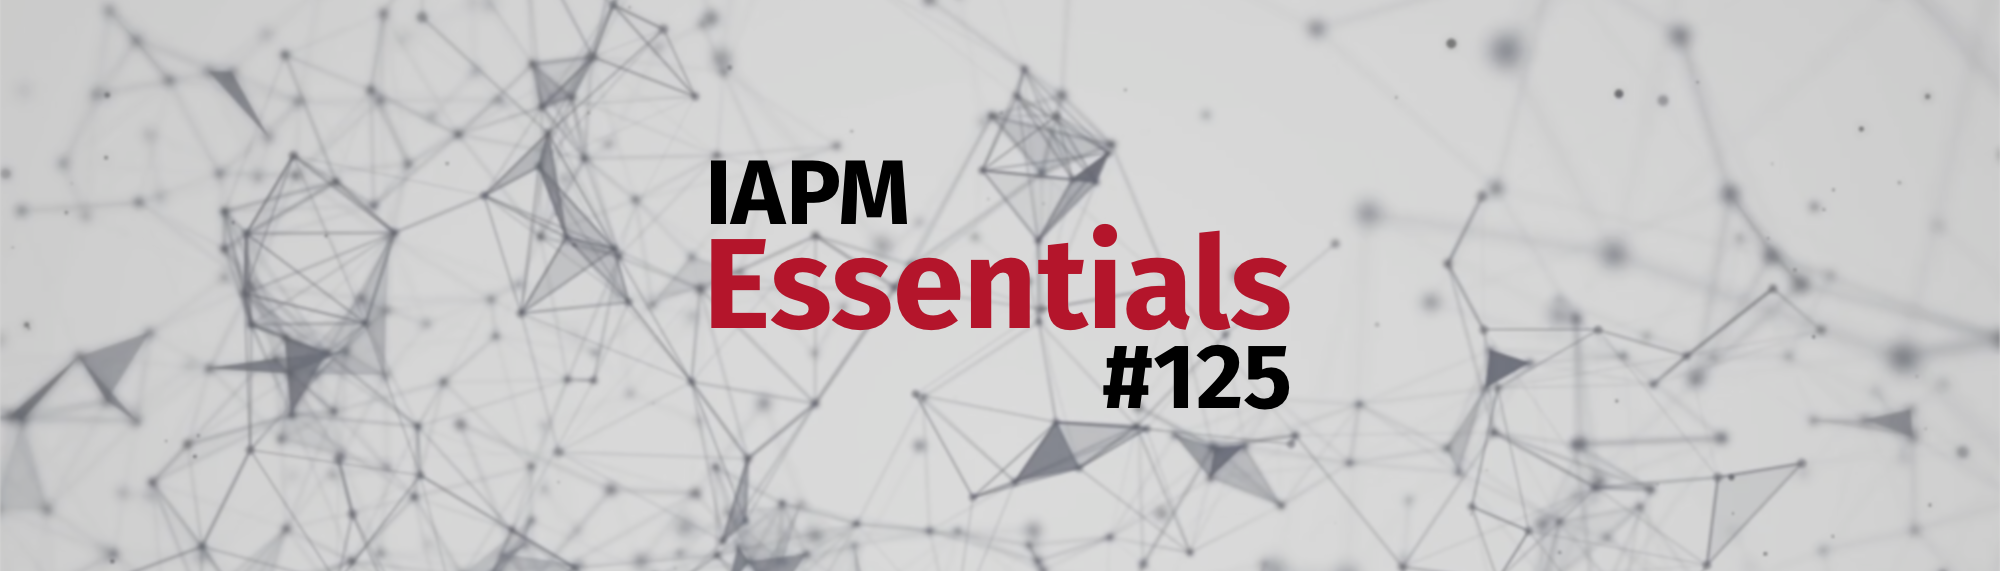 IAPM Essentials #125 - PM news | IAPM